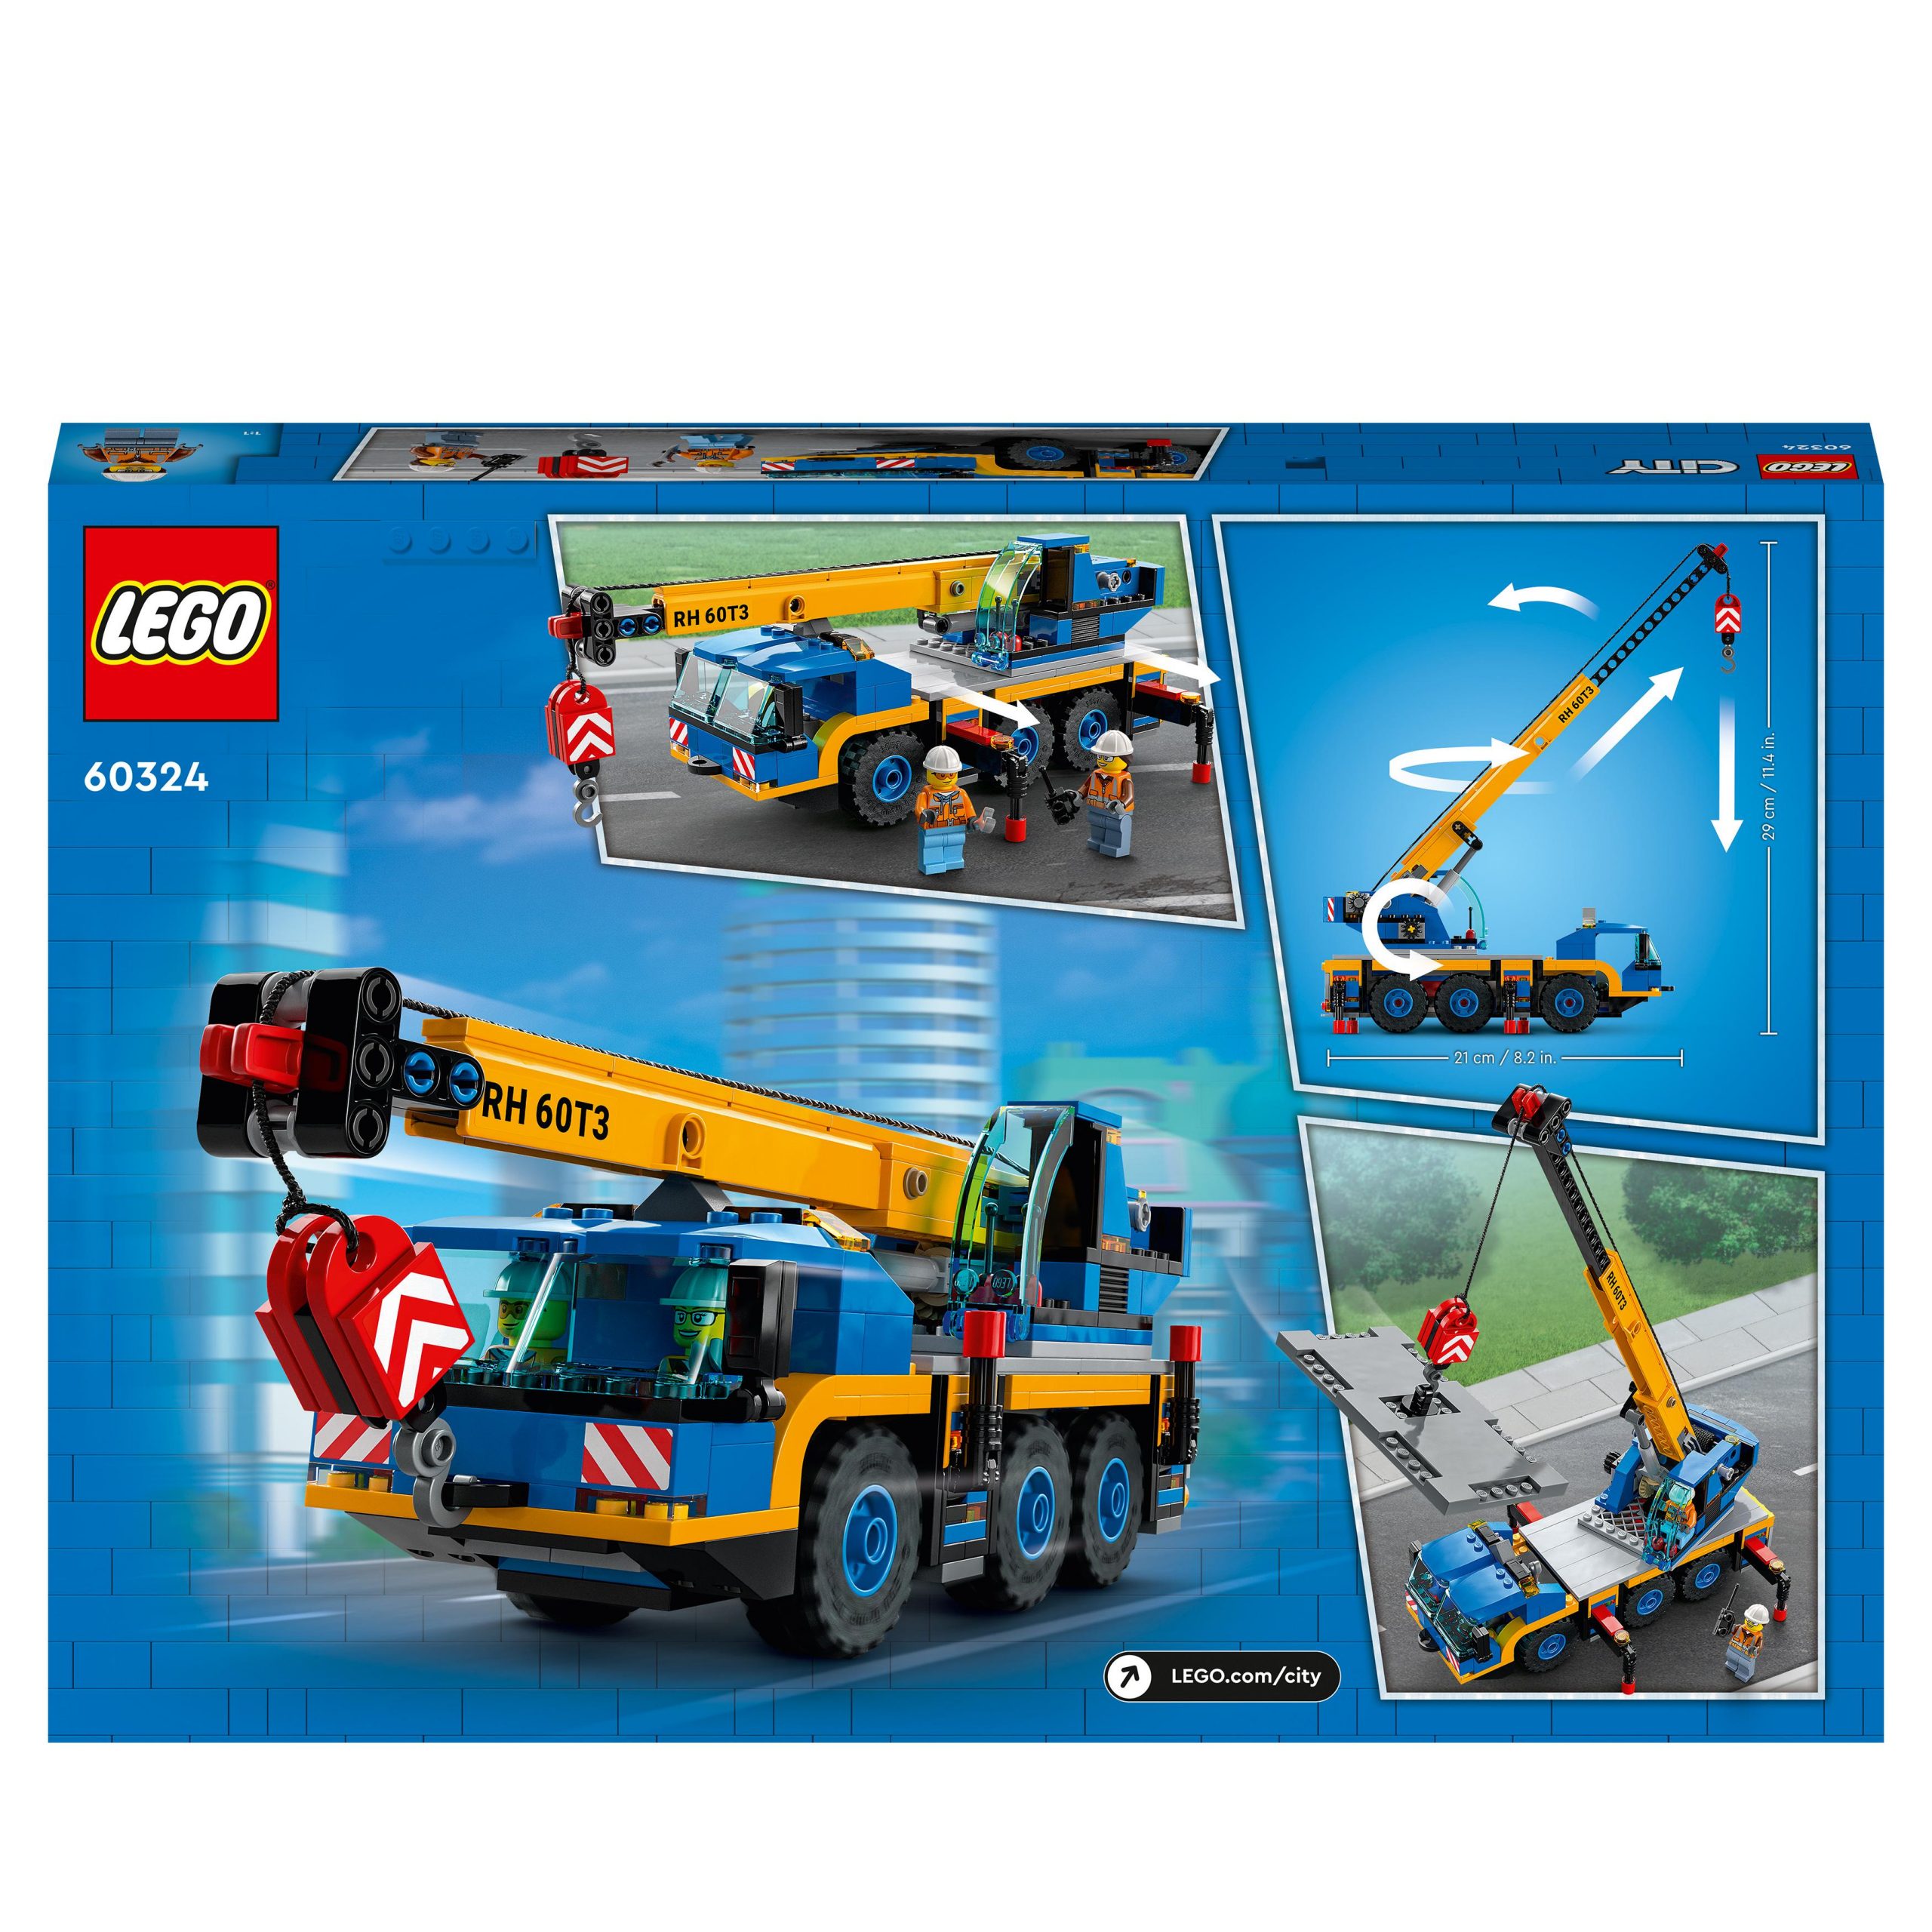 Lego city great vehicles gru mobile, veicoli da cantiere, camion giocattolo, giochi per bambini dai 7 anni in su, 60324 - LEGO CITY, Lego